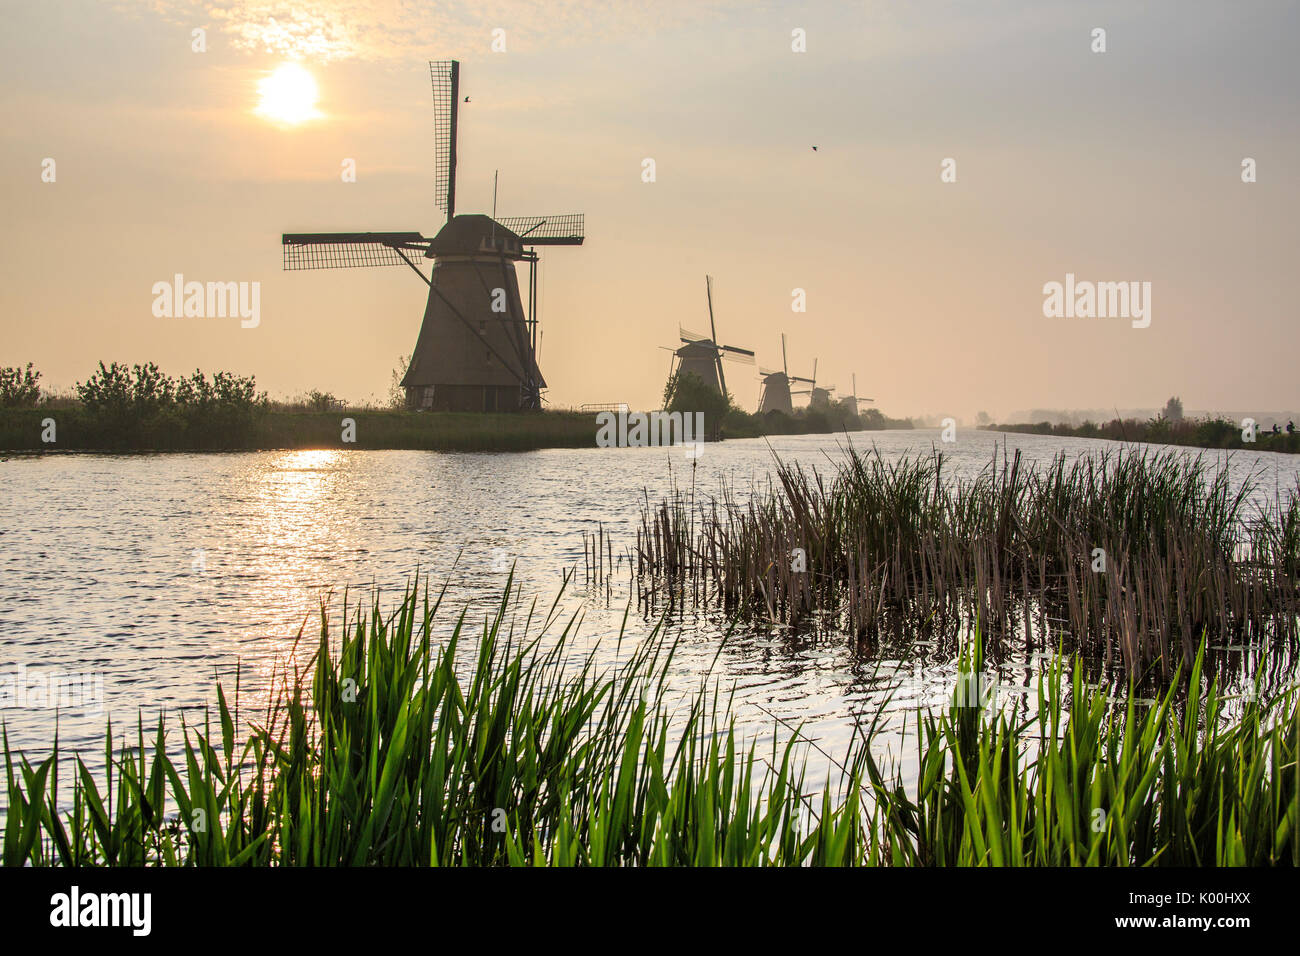 Soleil du matin se lever brille dans le canal où les moulins à vent se reflètent Kinderdijk Rotterdam Pays-Bas Hollande du Sud Europe Banque D'Images